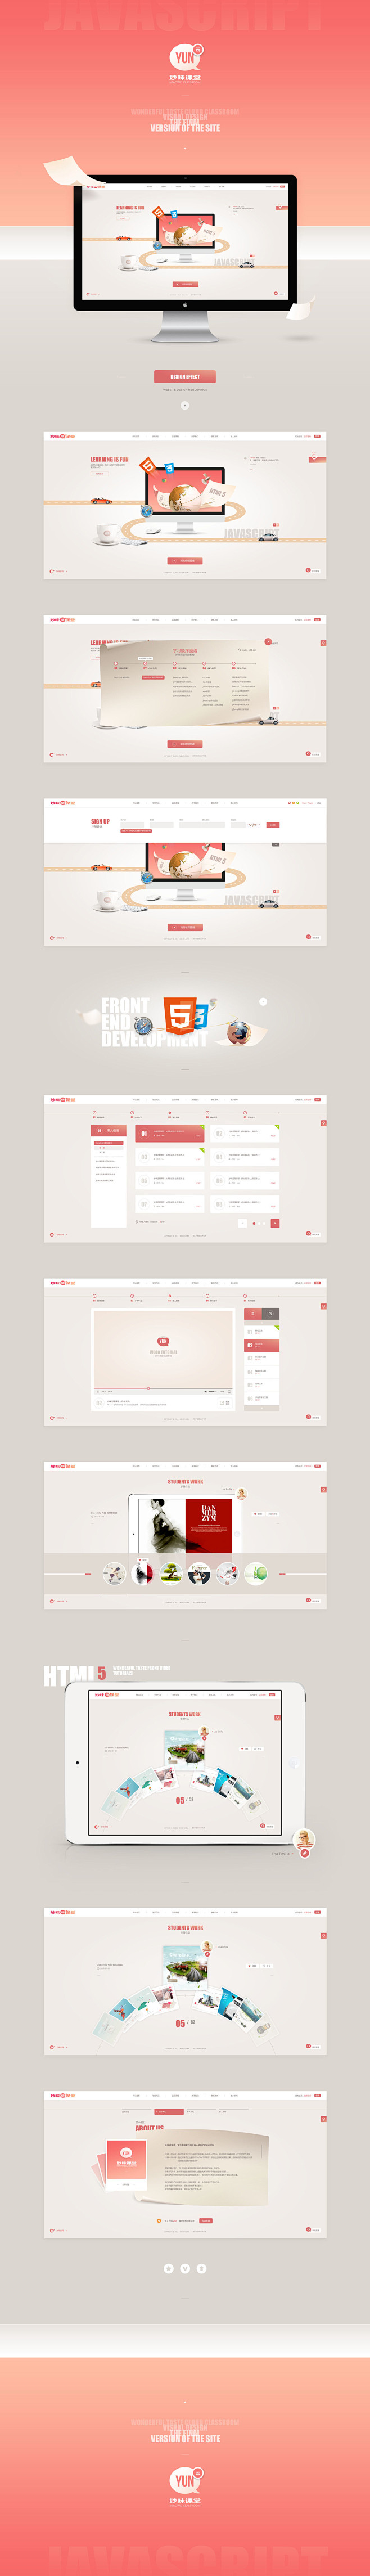 网页设计欣赏MIAOV红白配色网页设计